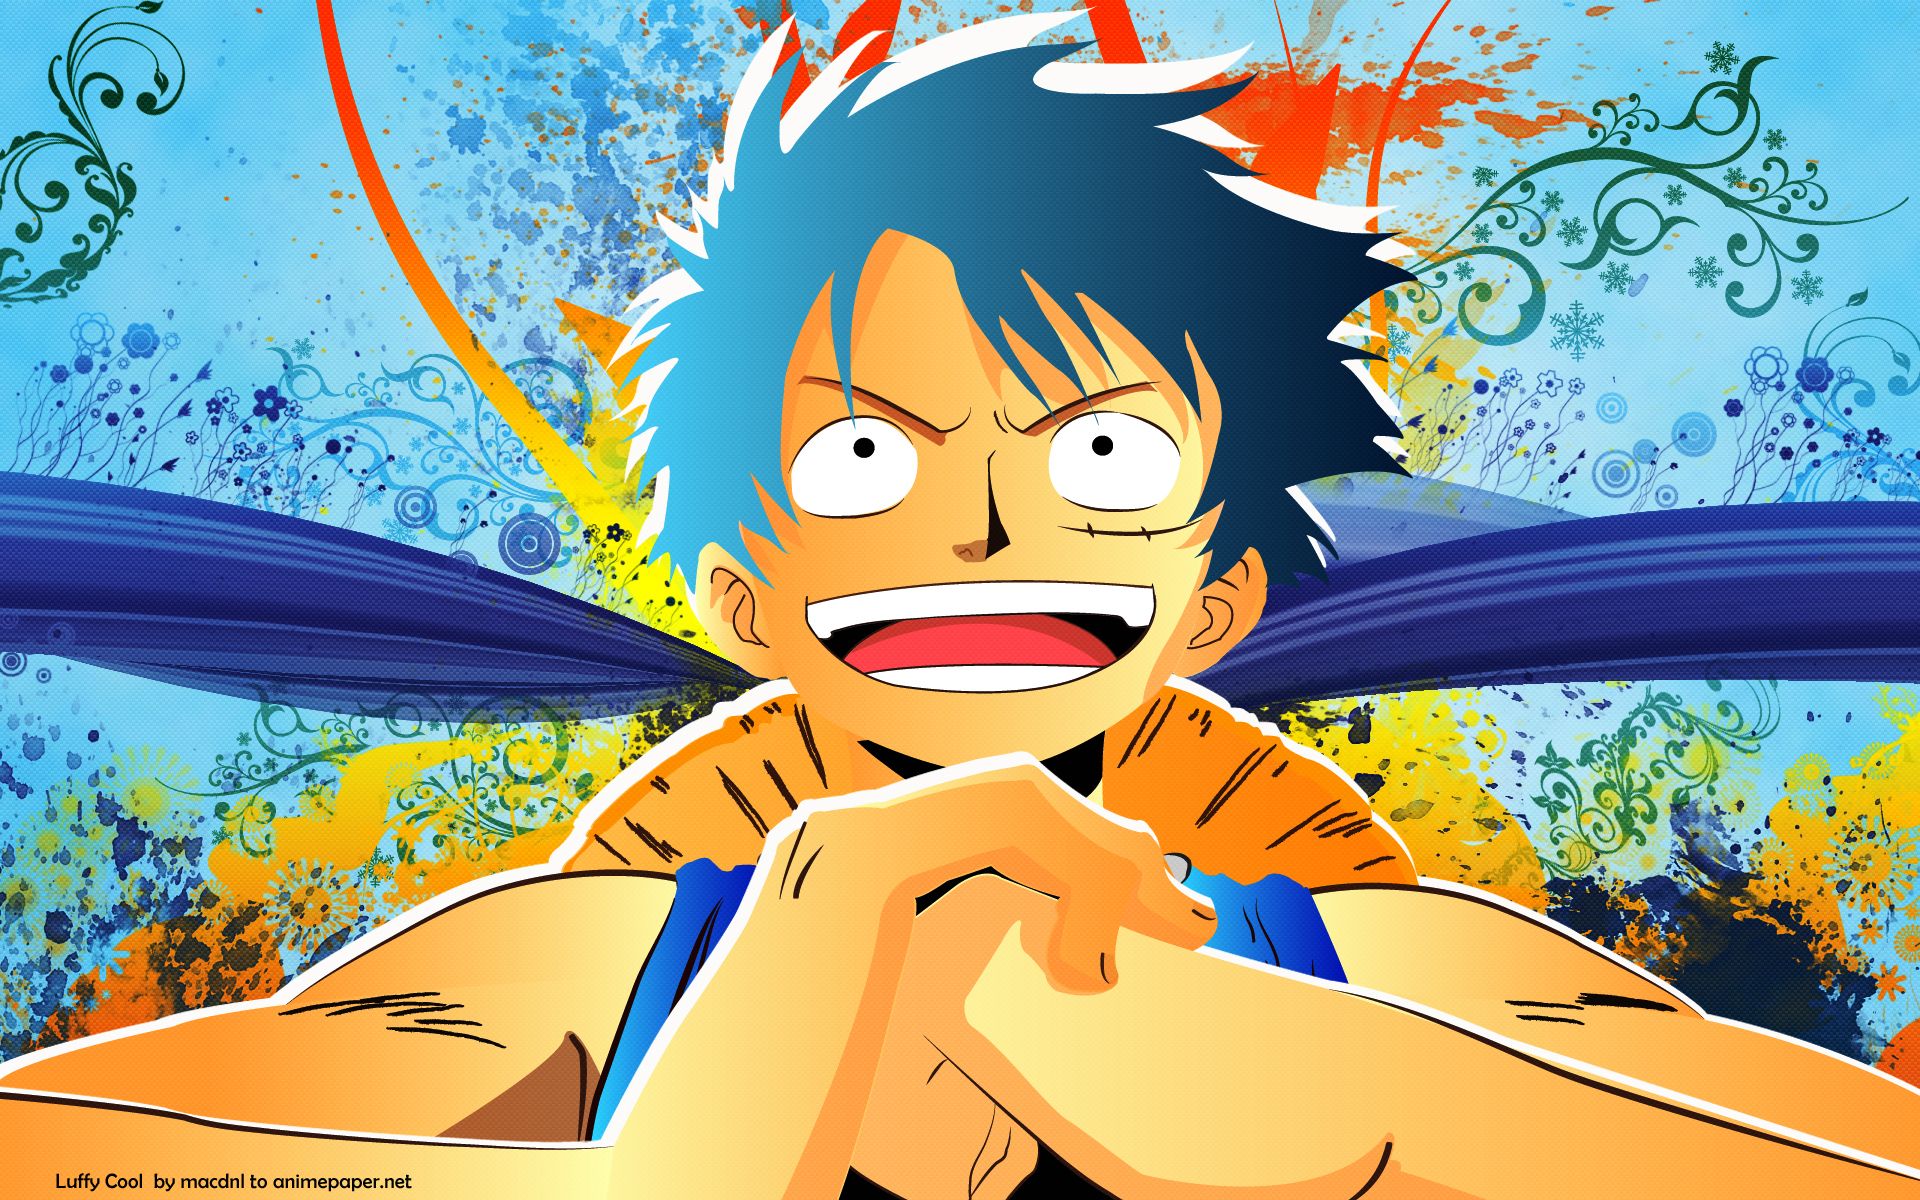 Monkey D Luffy One Piece 8k Wallpaper,HD Anime Wallpapers,4k